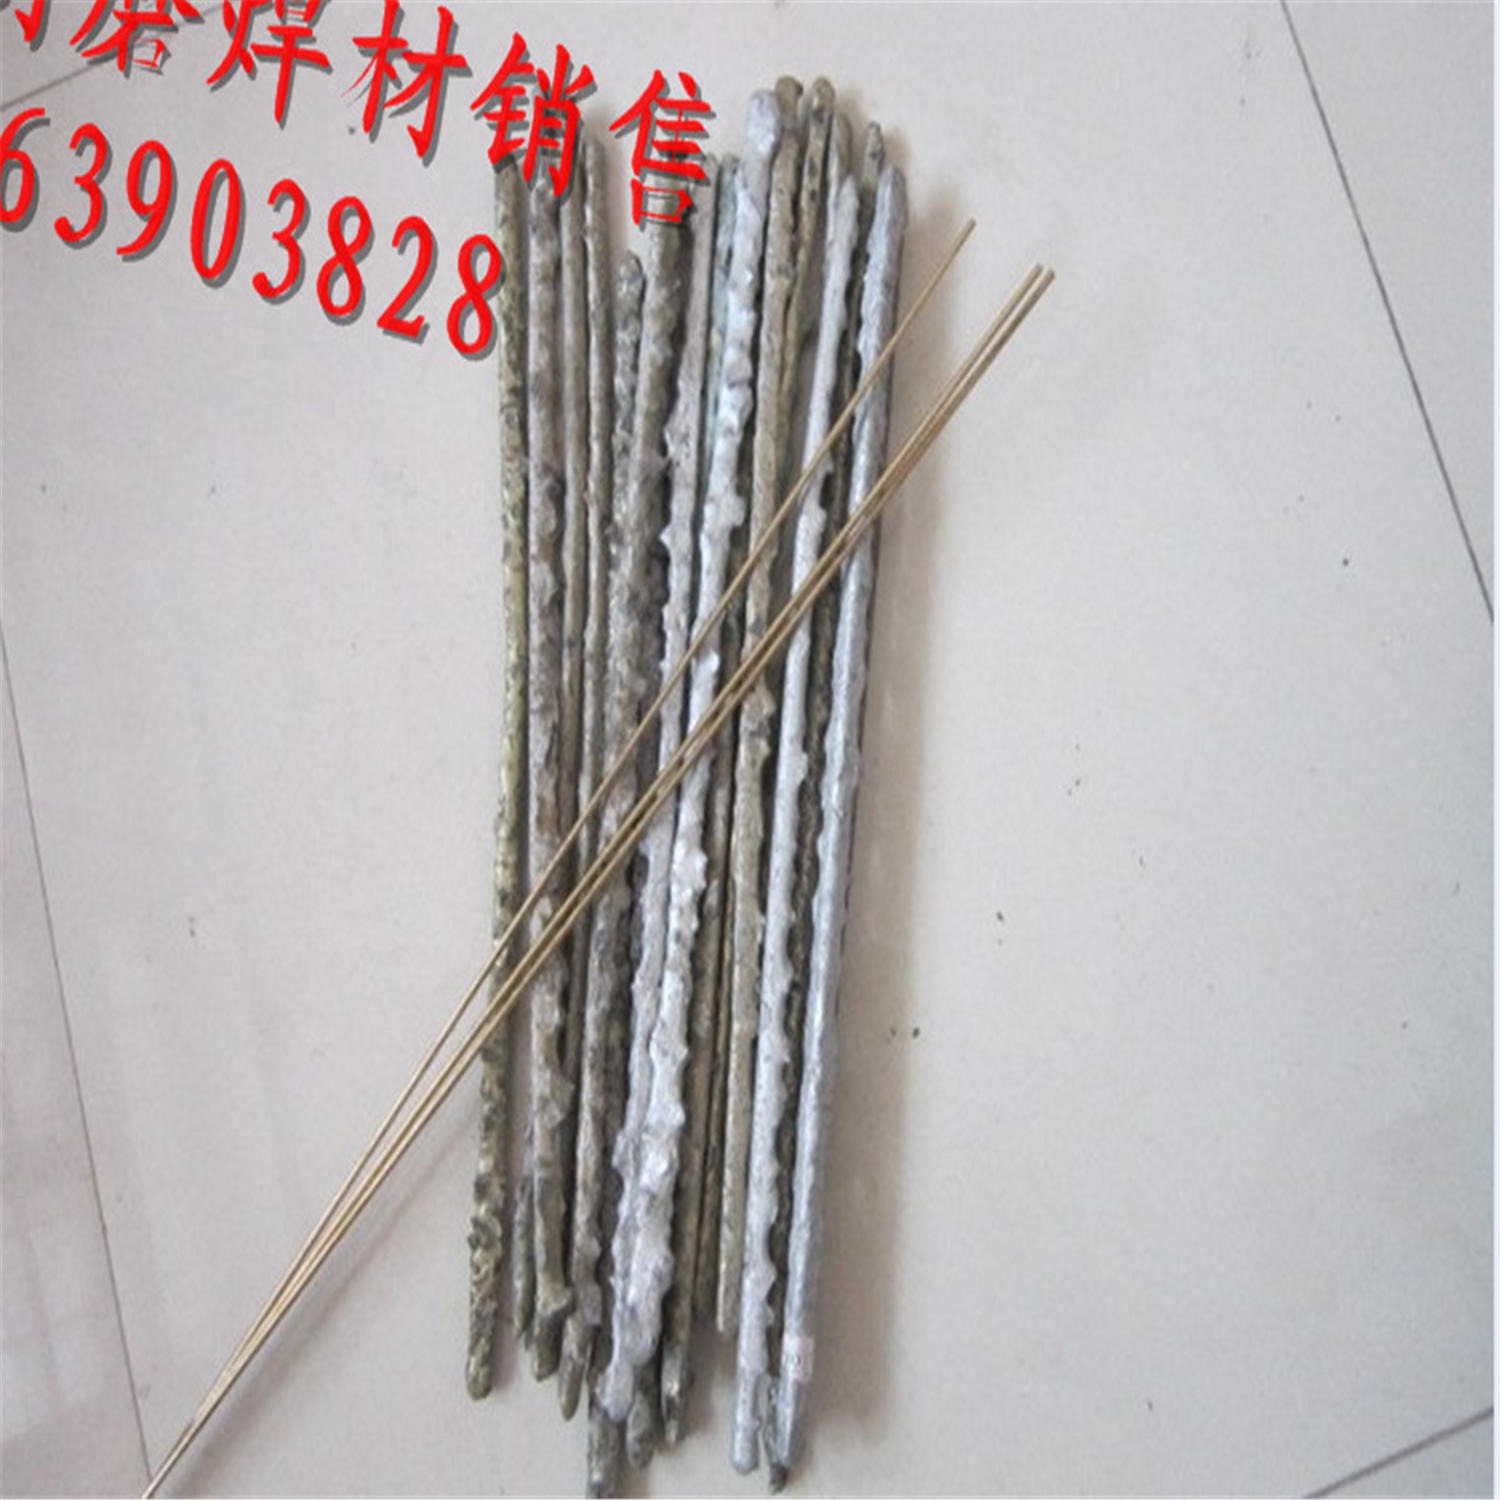 高硬度YD-30目硬质合金气焊条 硬质合金气焊条图片